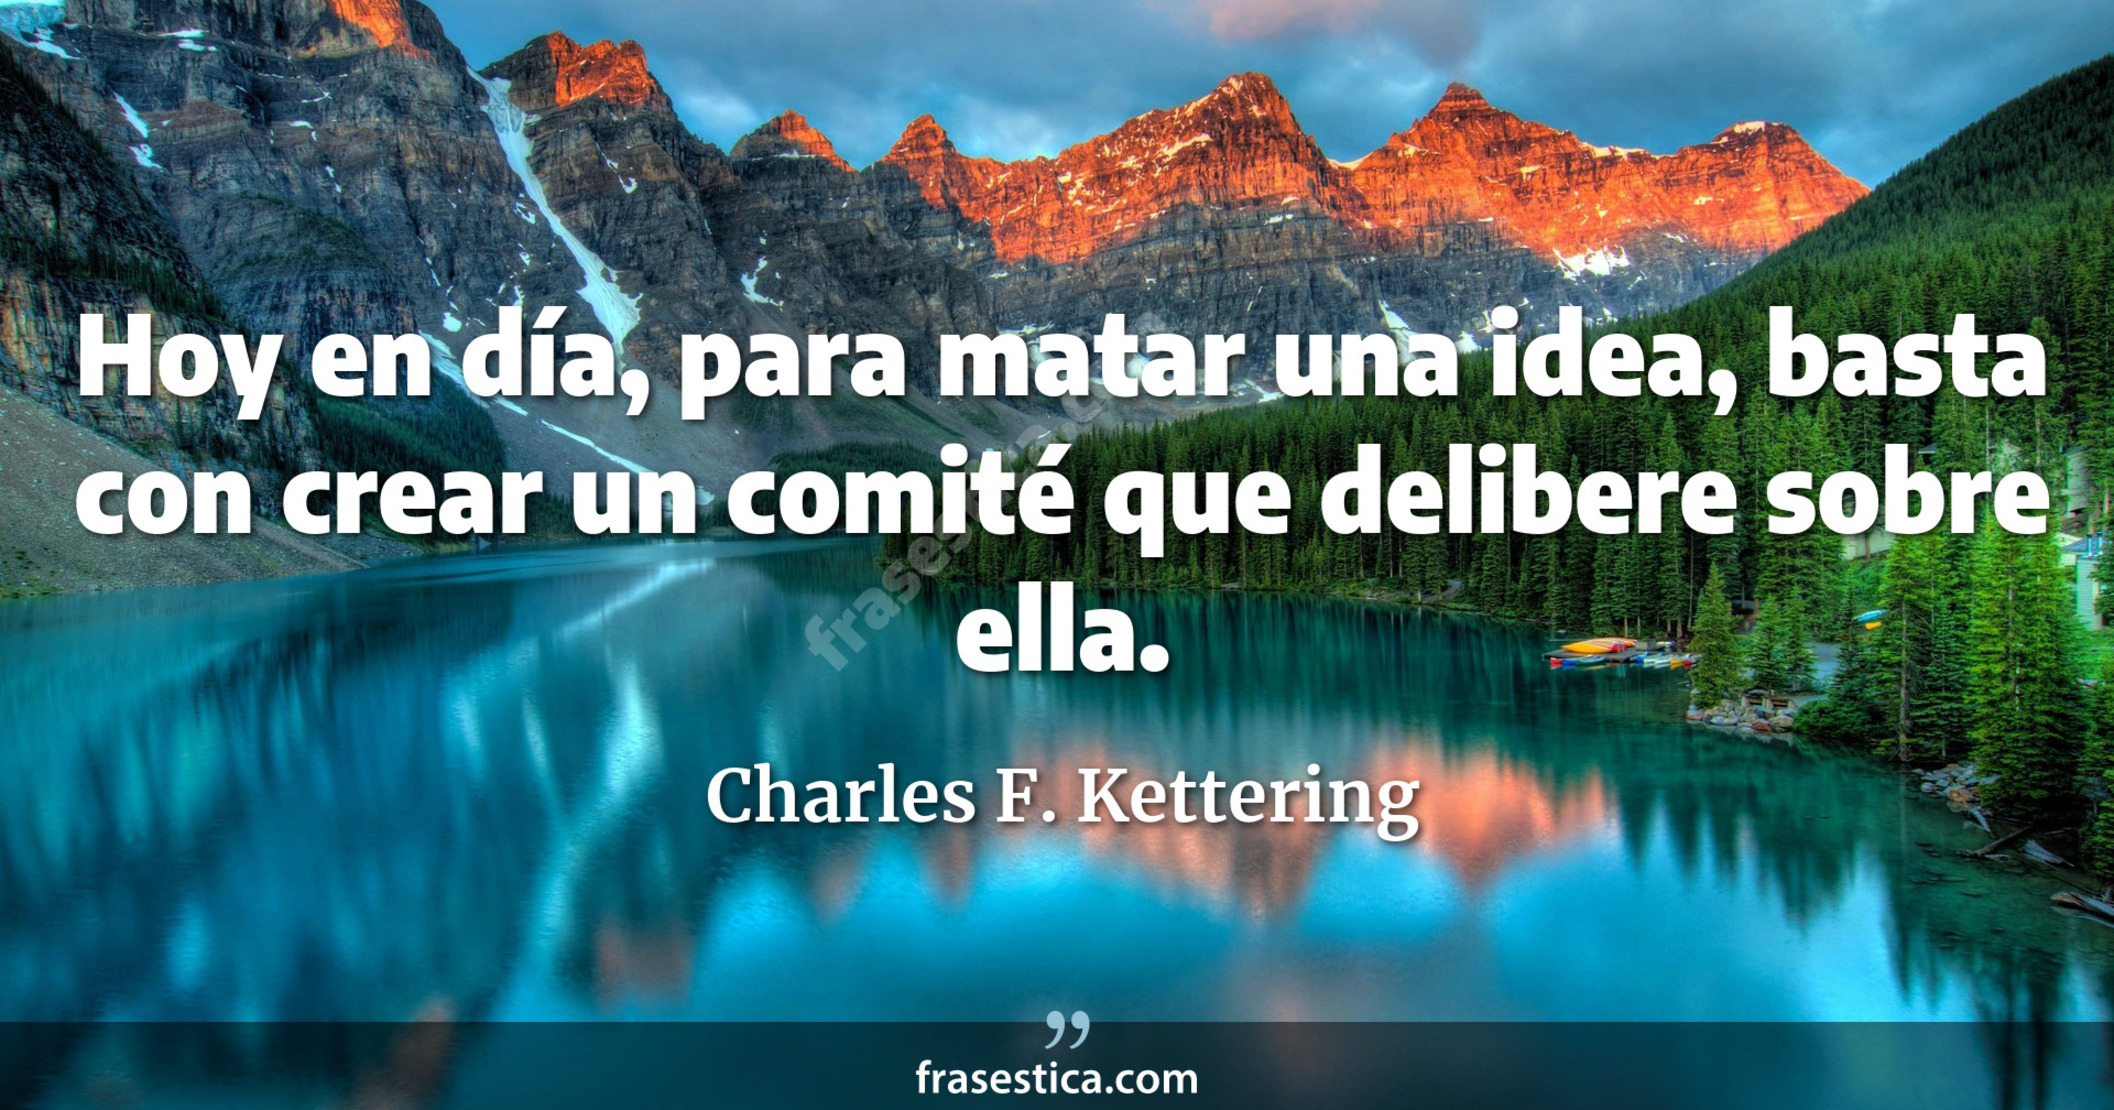 Hoy en día, para matar una idea, basta con crear un comité que delibere sobre ella. - Charles F. Kettering